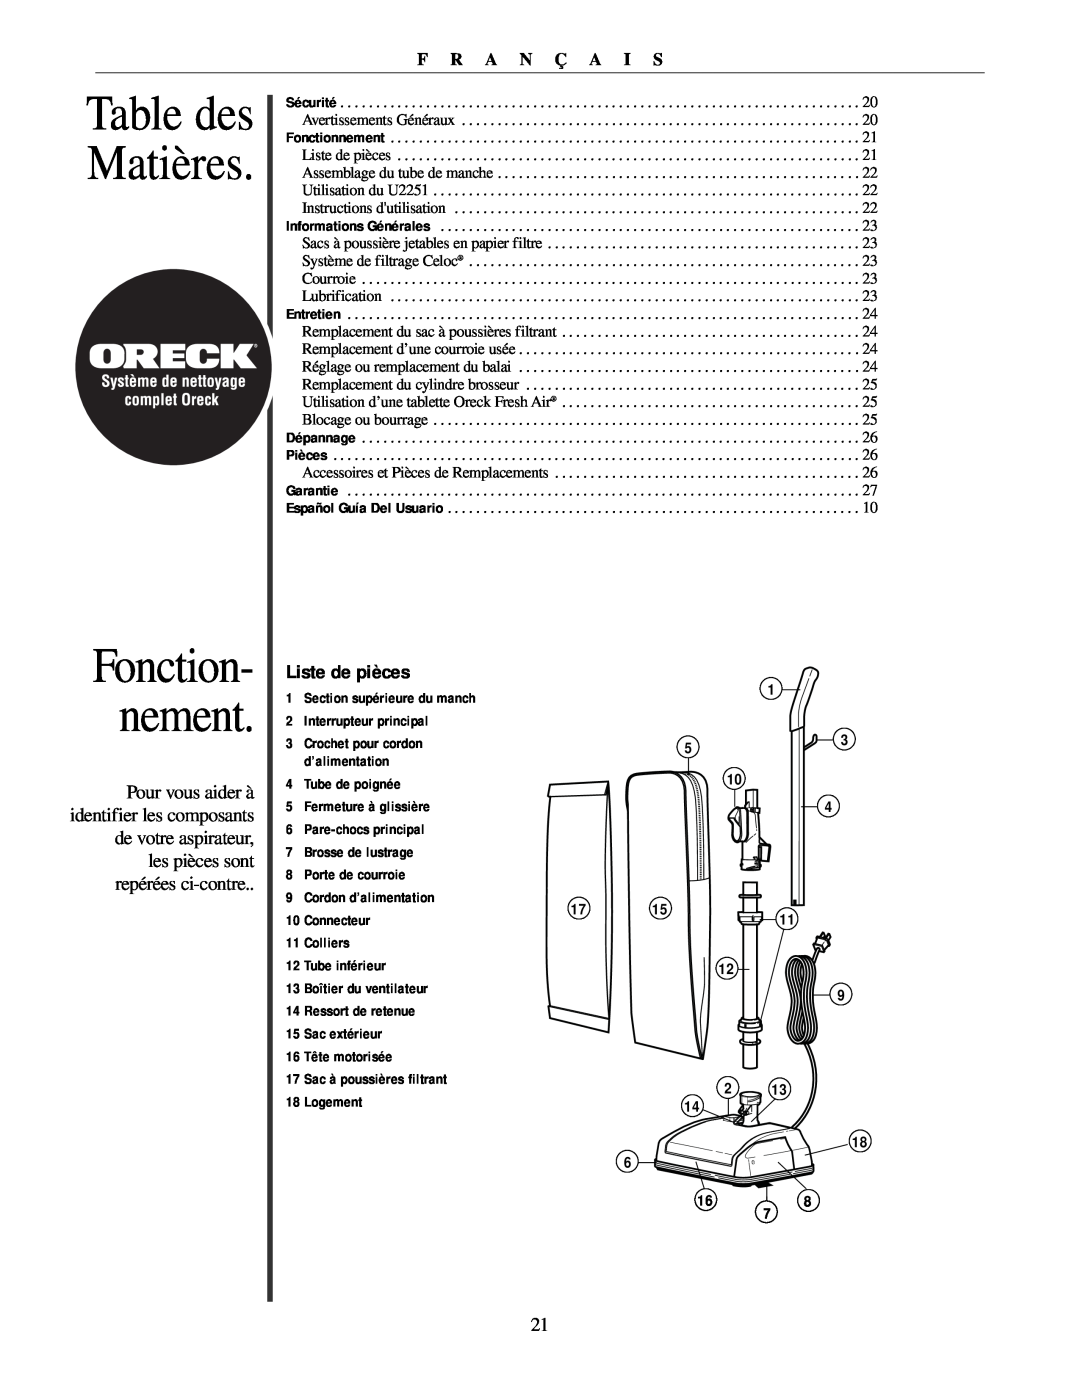 Oreck U2251 manual Table des Matières, Fonction- nement, Liste de pièces, F R A N Ç A I S 